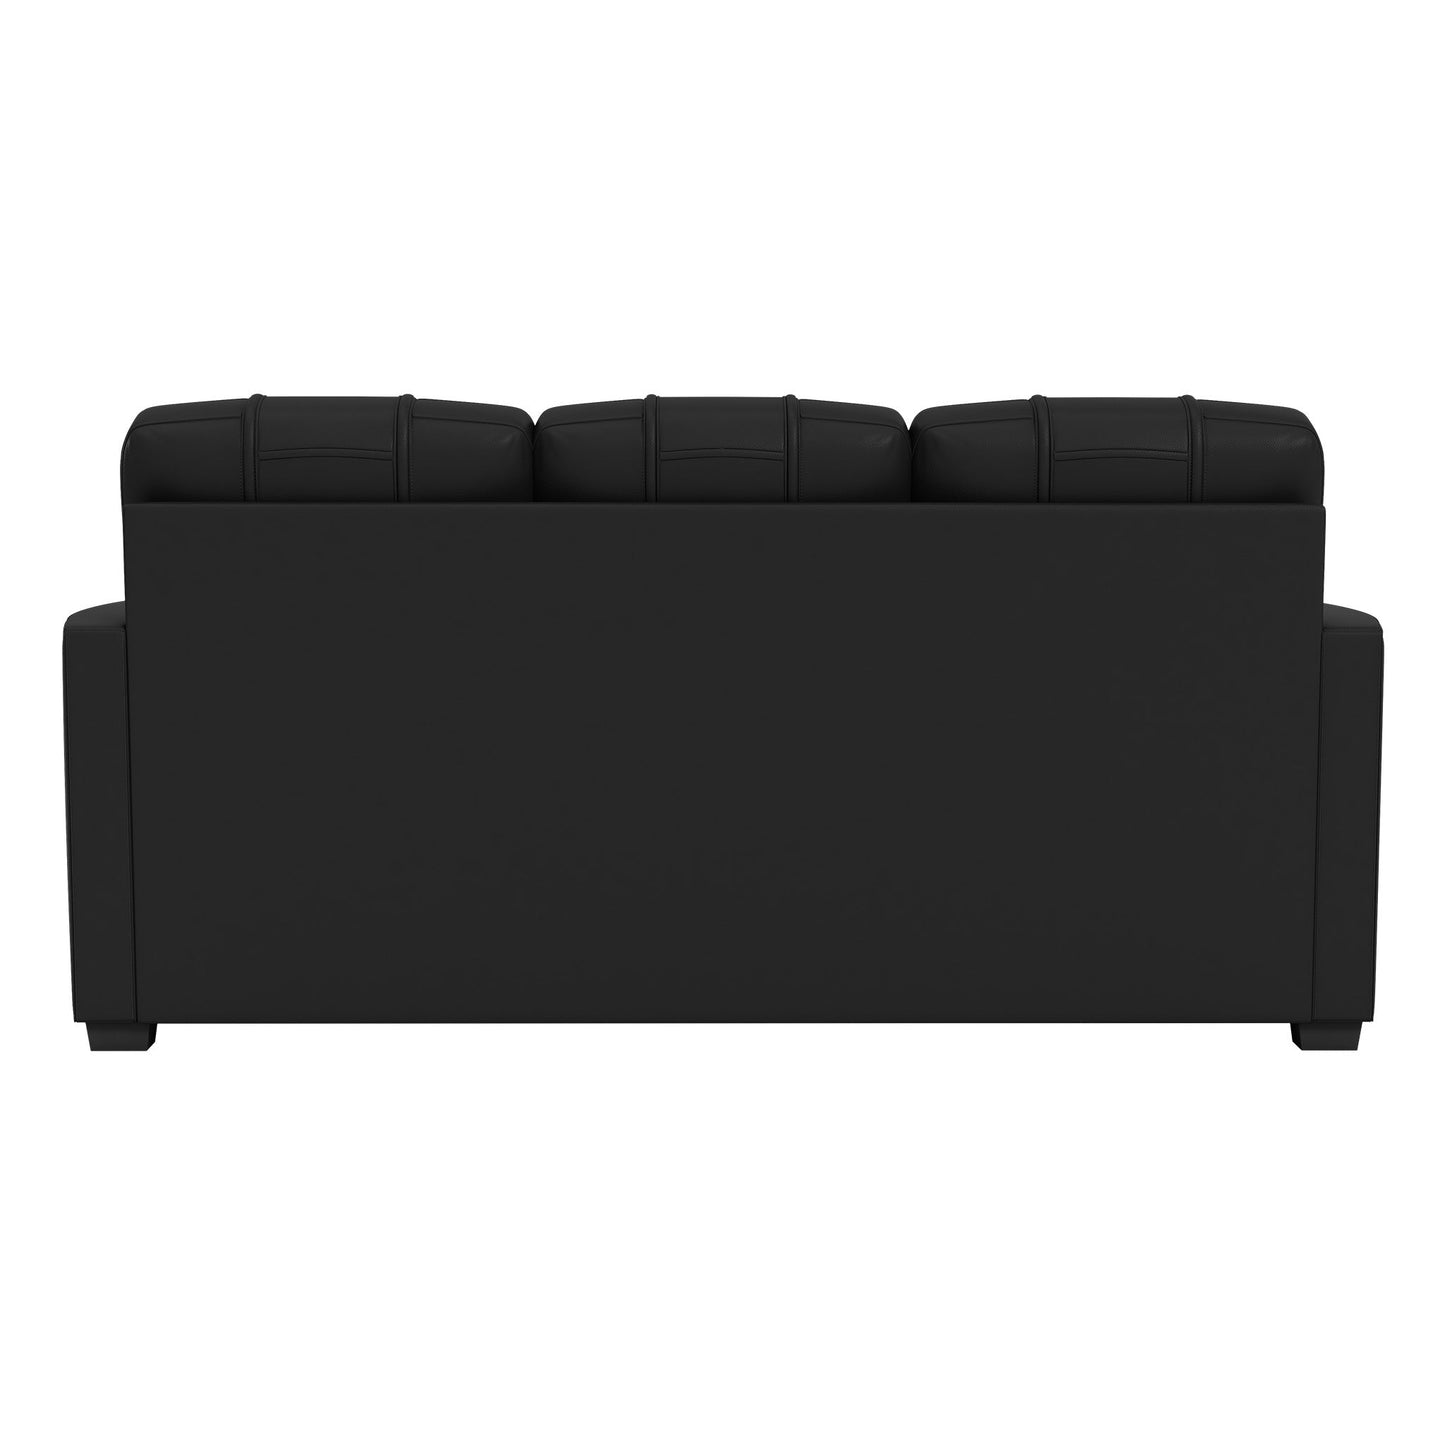 Silver Sofa with Portland Trailblazers Primary Logo